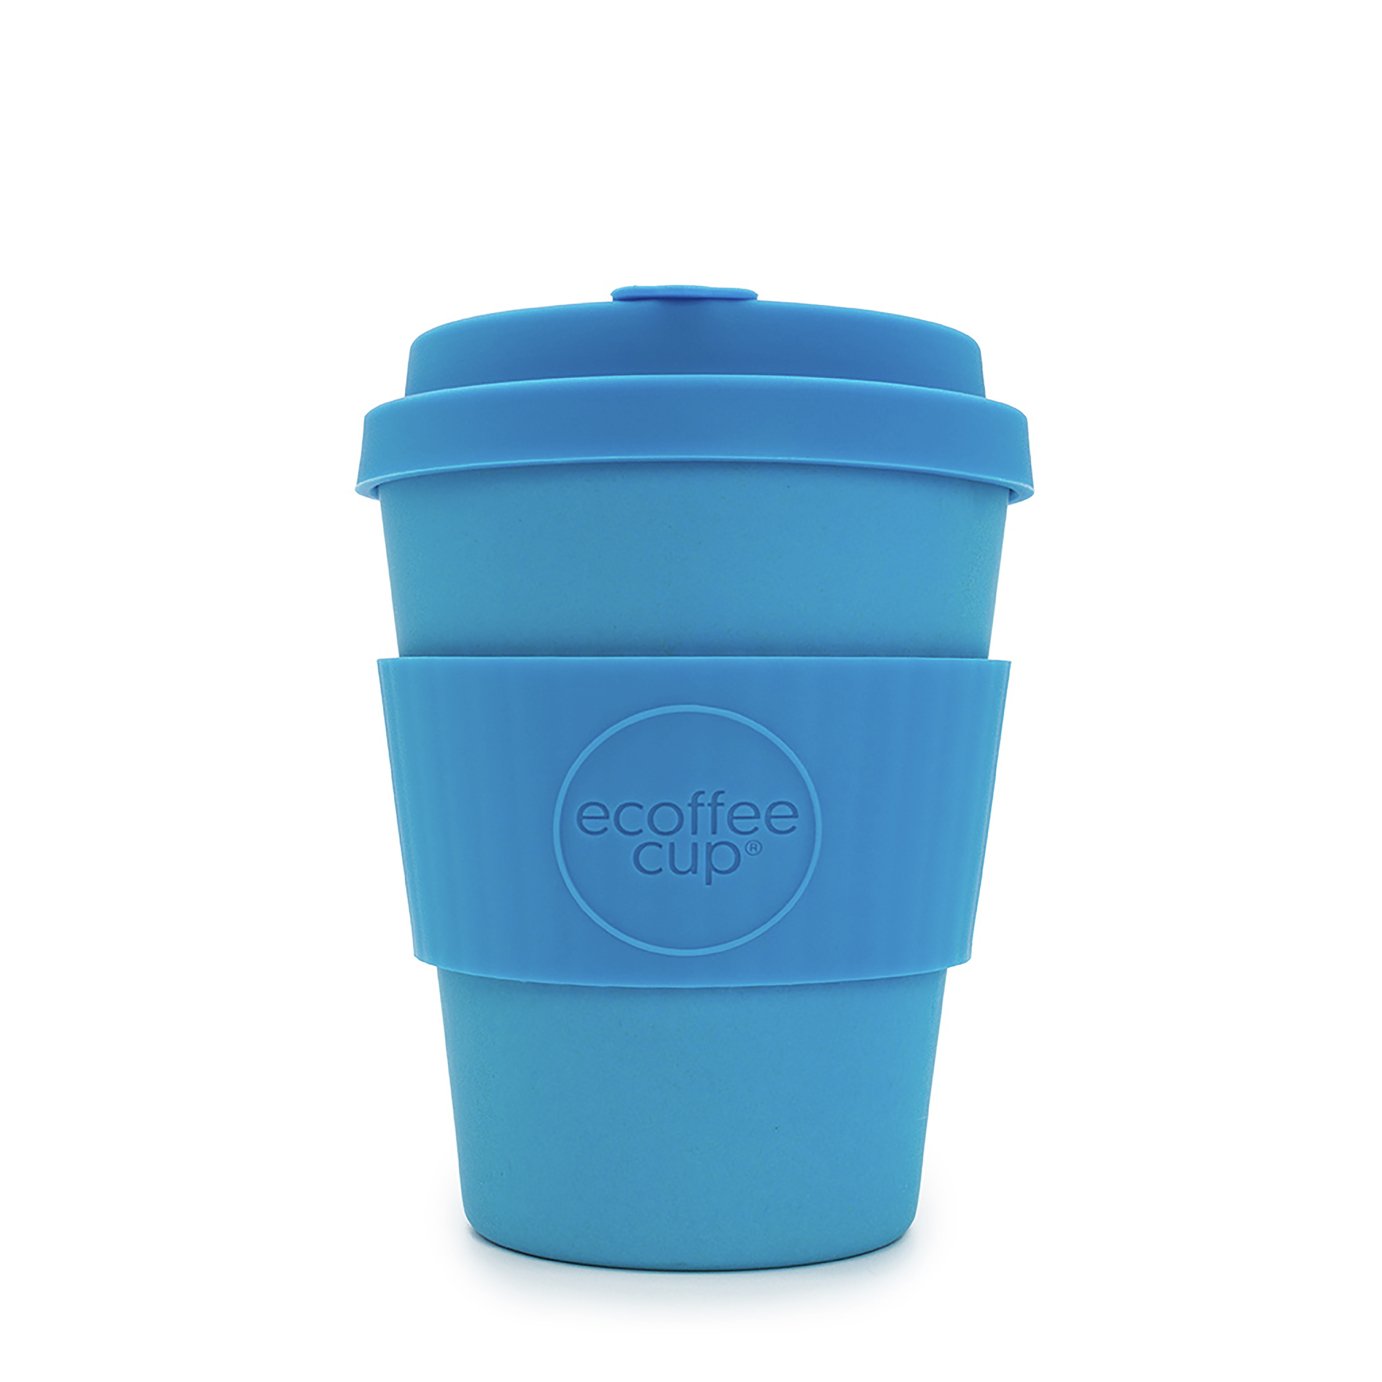 Ecoffee Cup Light Blue - 340ml